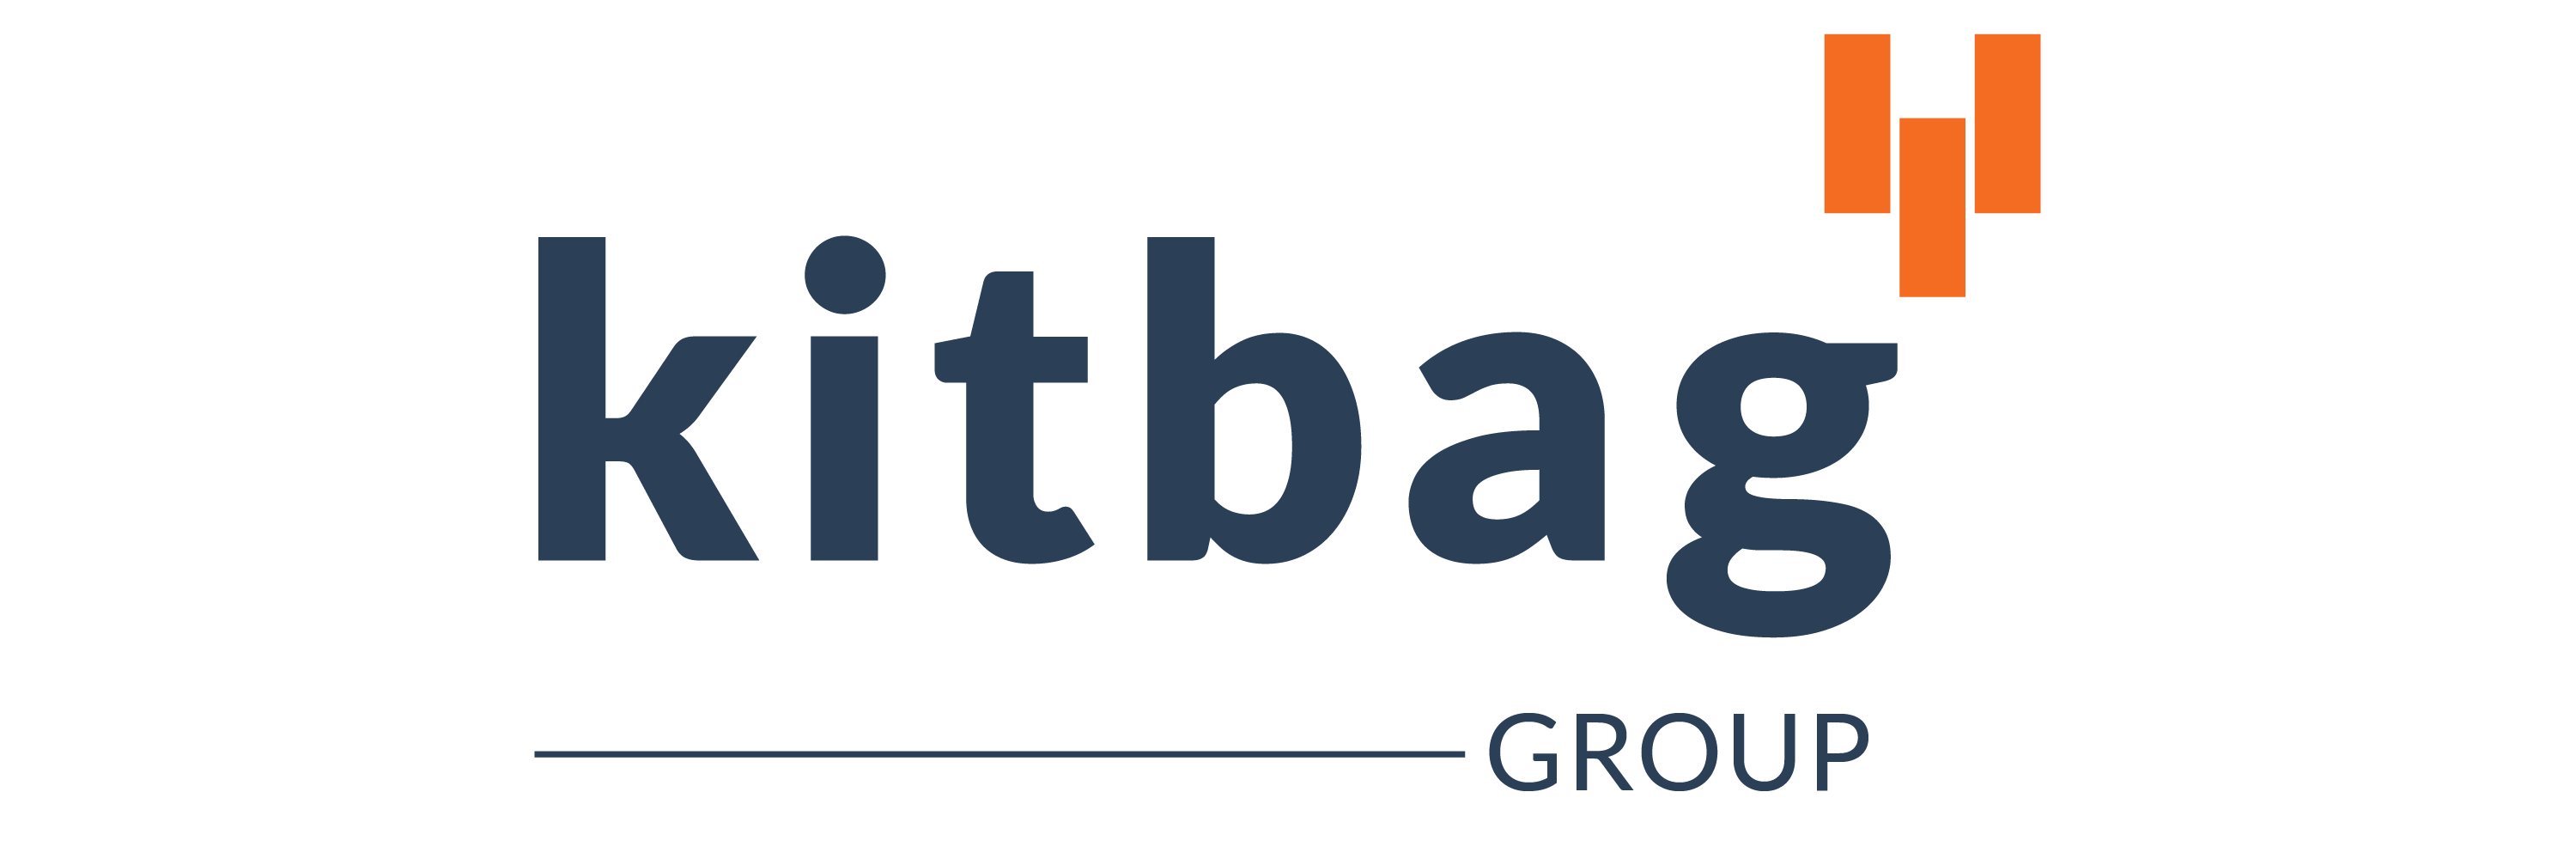 The Kitbag Group